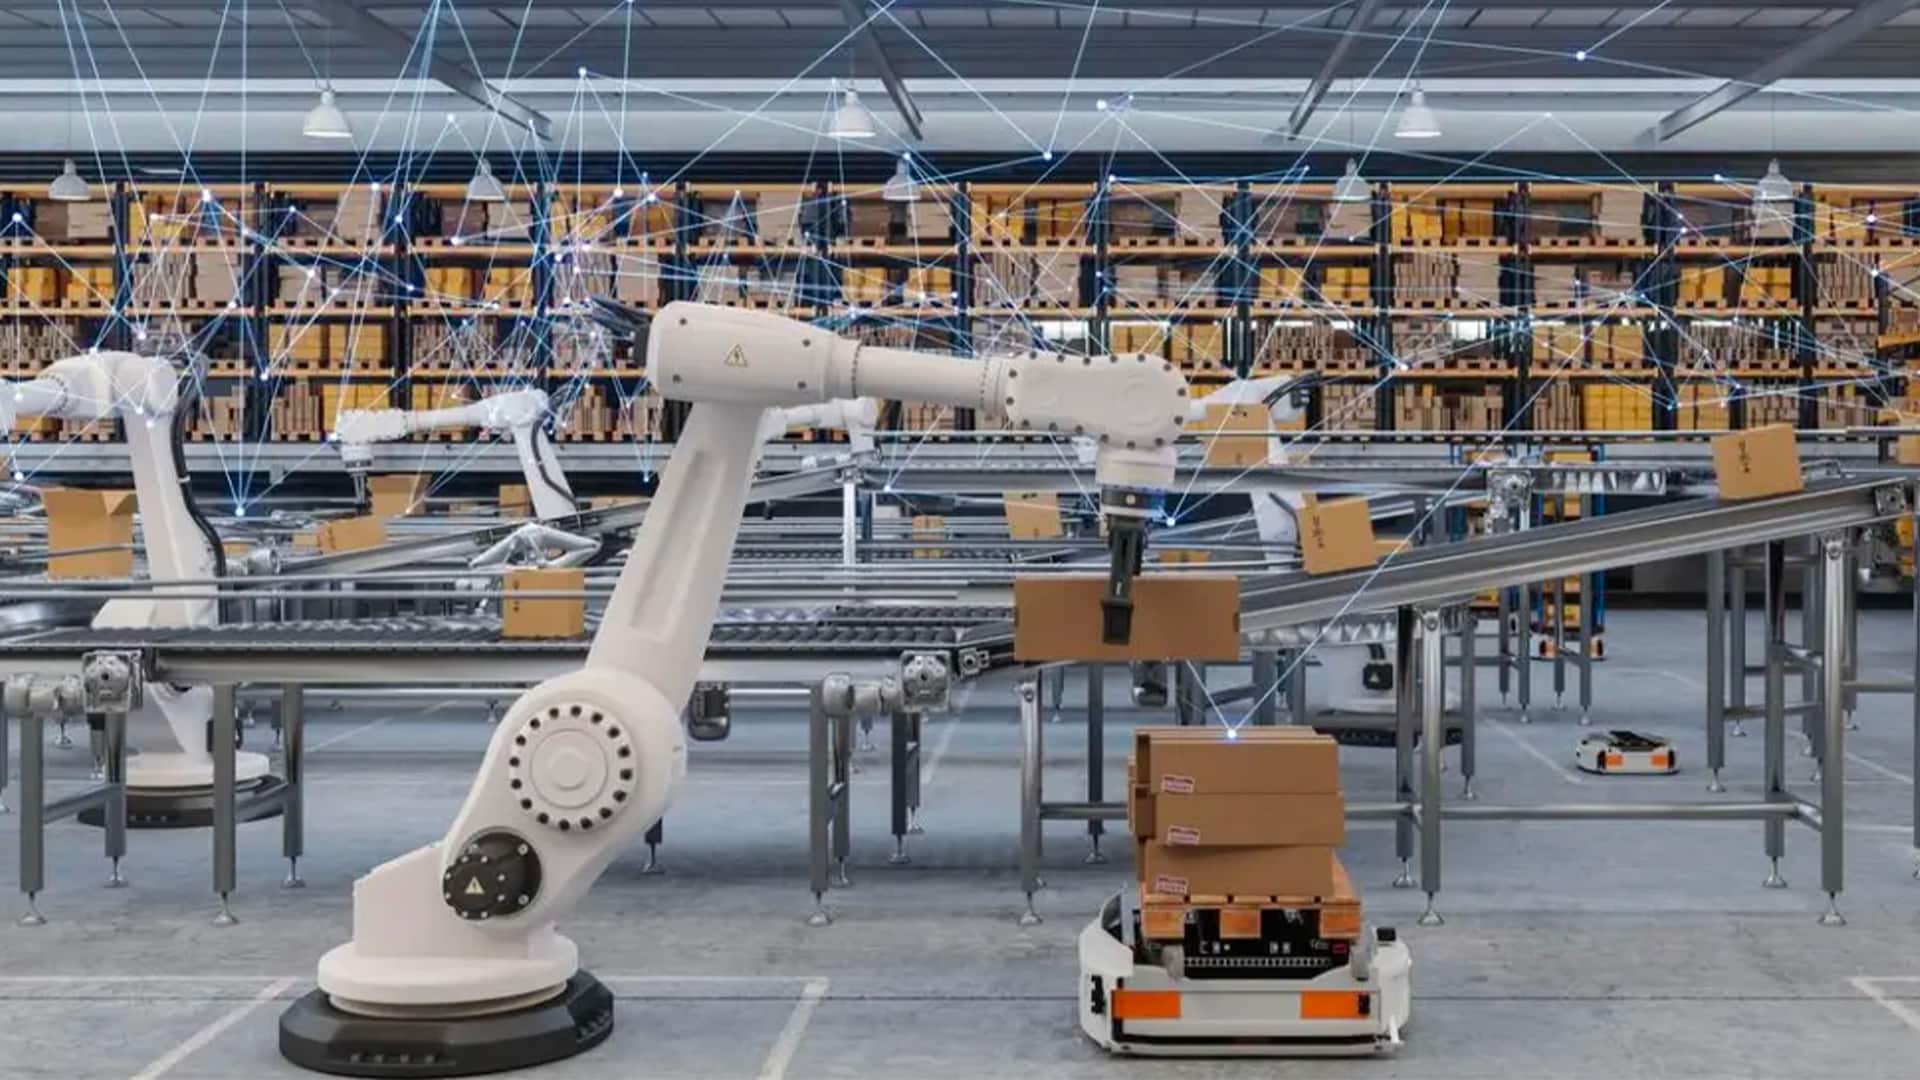 مرگ توسط ربات: ماشینی انسان را با جعبه سبزیجات گیج می کند، کارگر را در یک حادثه غم انگیز له می کند